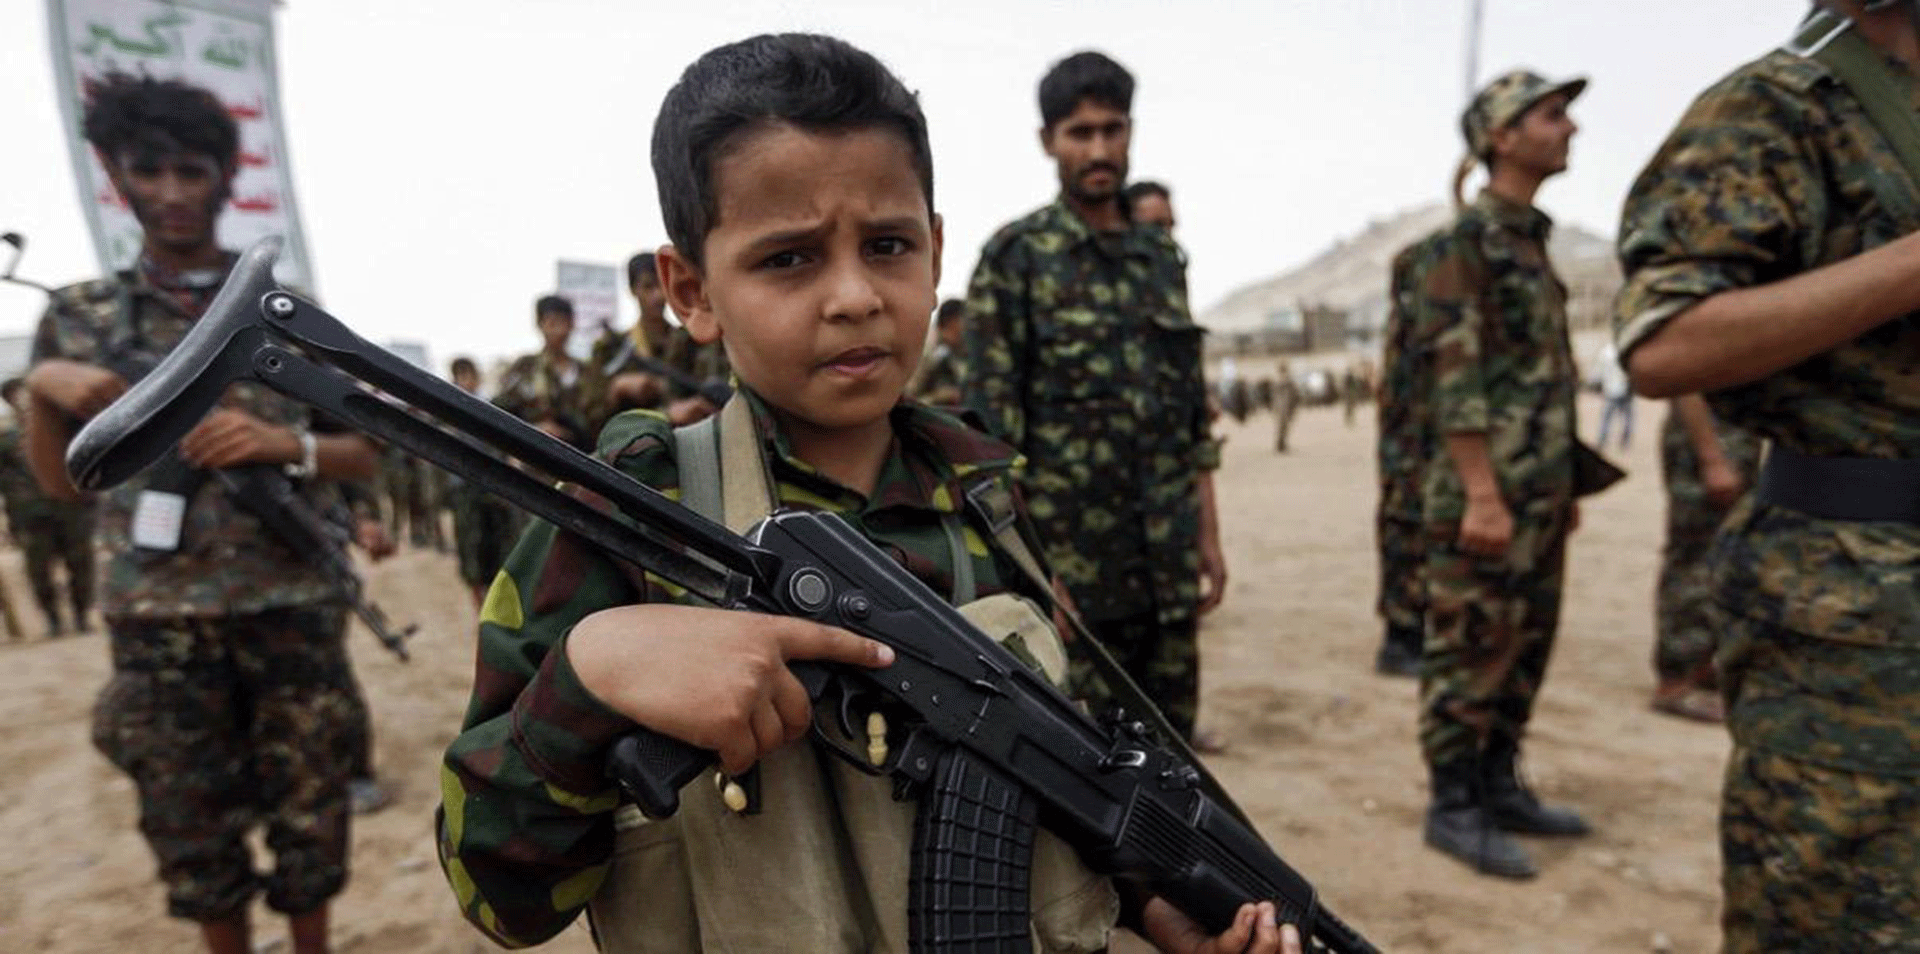 Yemen Peace Talks Resume as Houthi Rebels Begin Withdrawing from Hodeidah